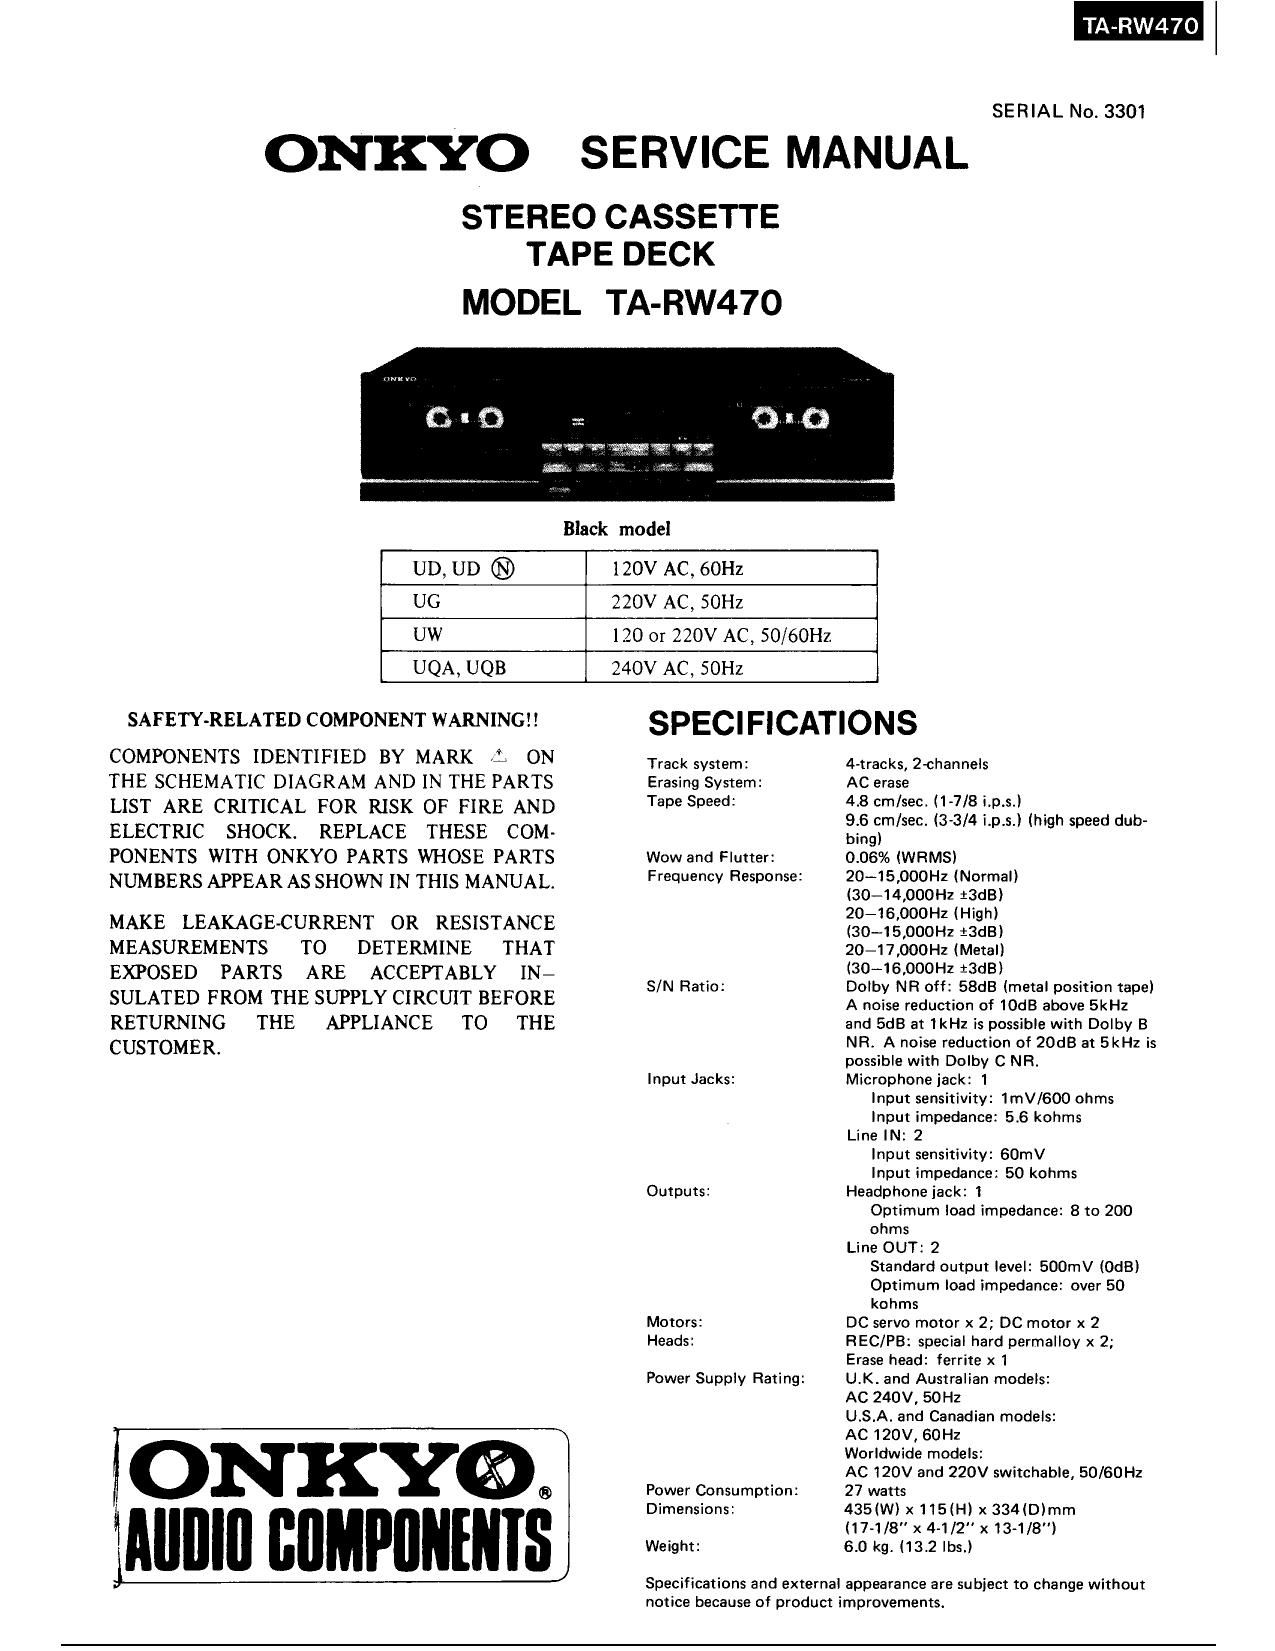 Onkyo TARW 470 Service Manual